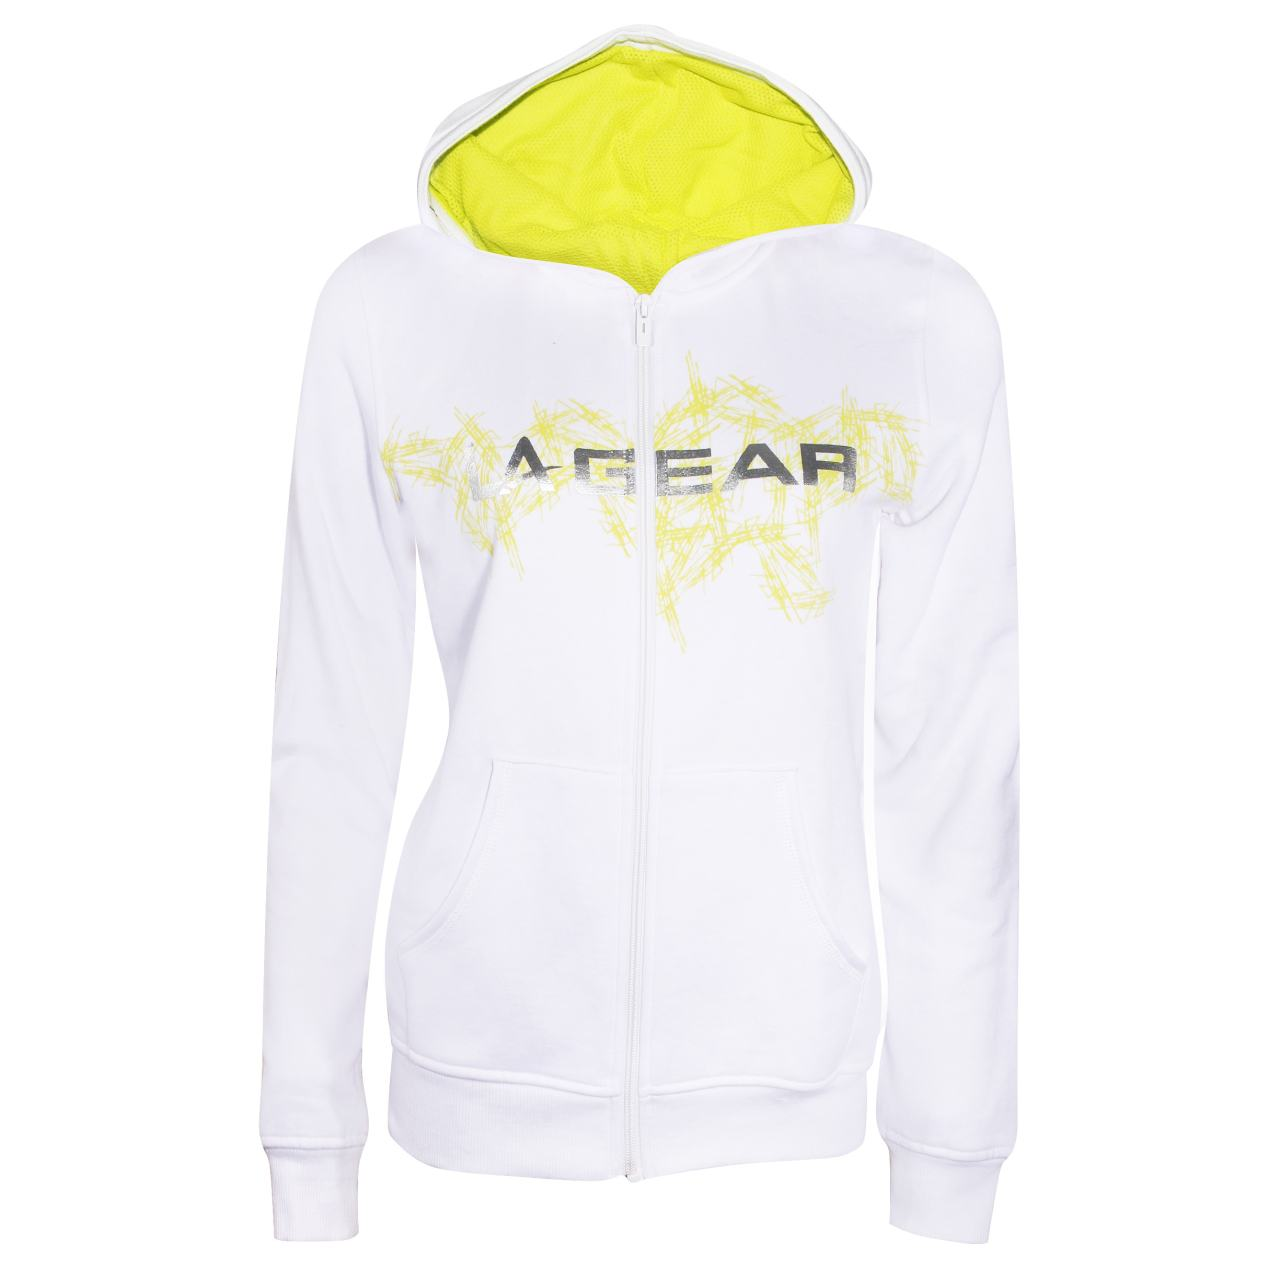 سویشرت ورزشی زنانه ال ای گر-LA GEAR سویشرت ورزشی زنانه کد 0026w - سفید و زرد